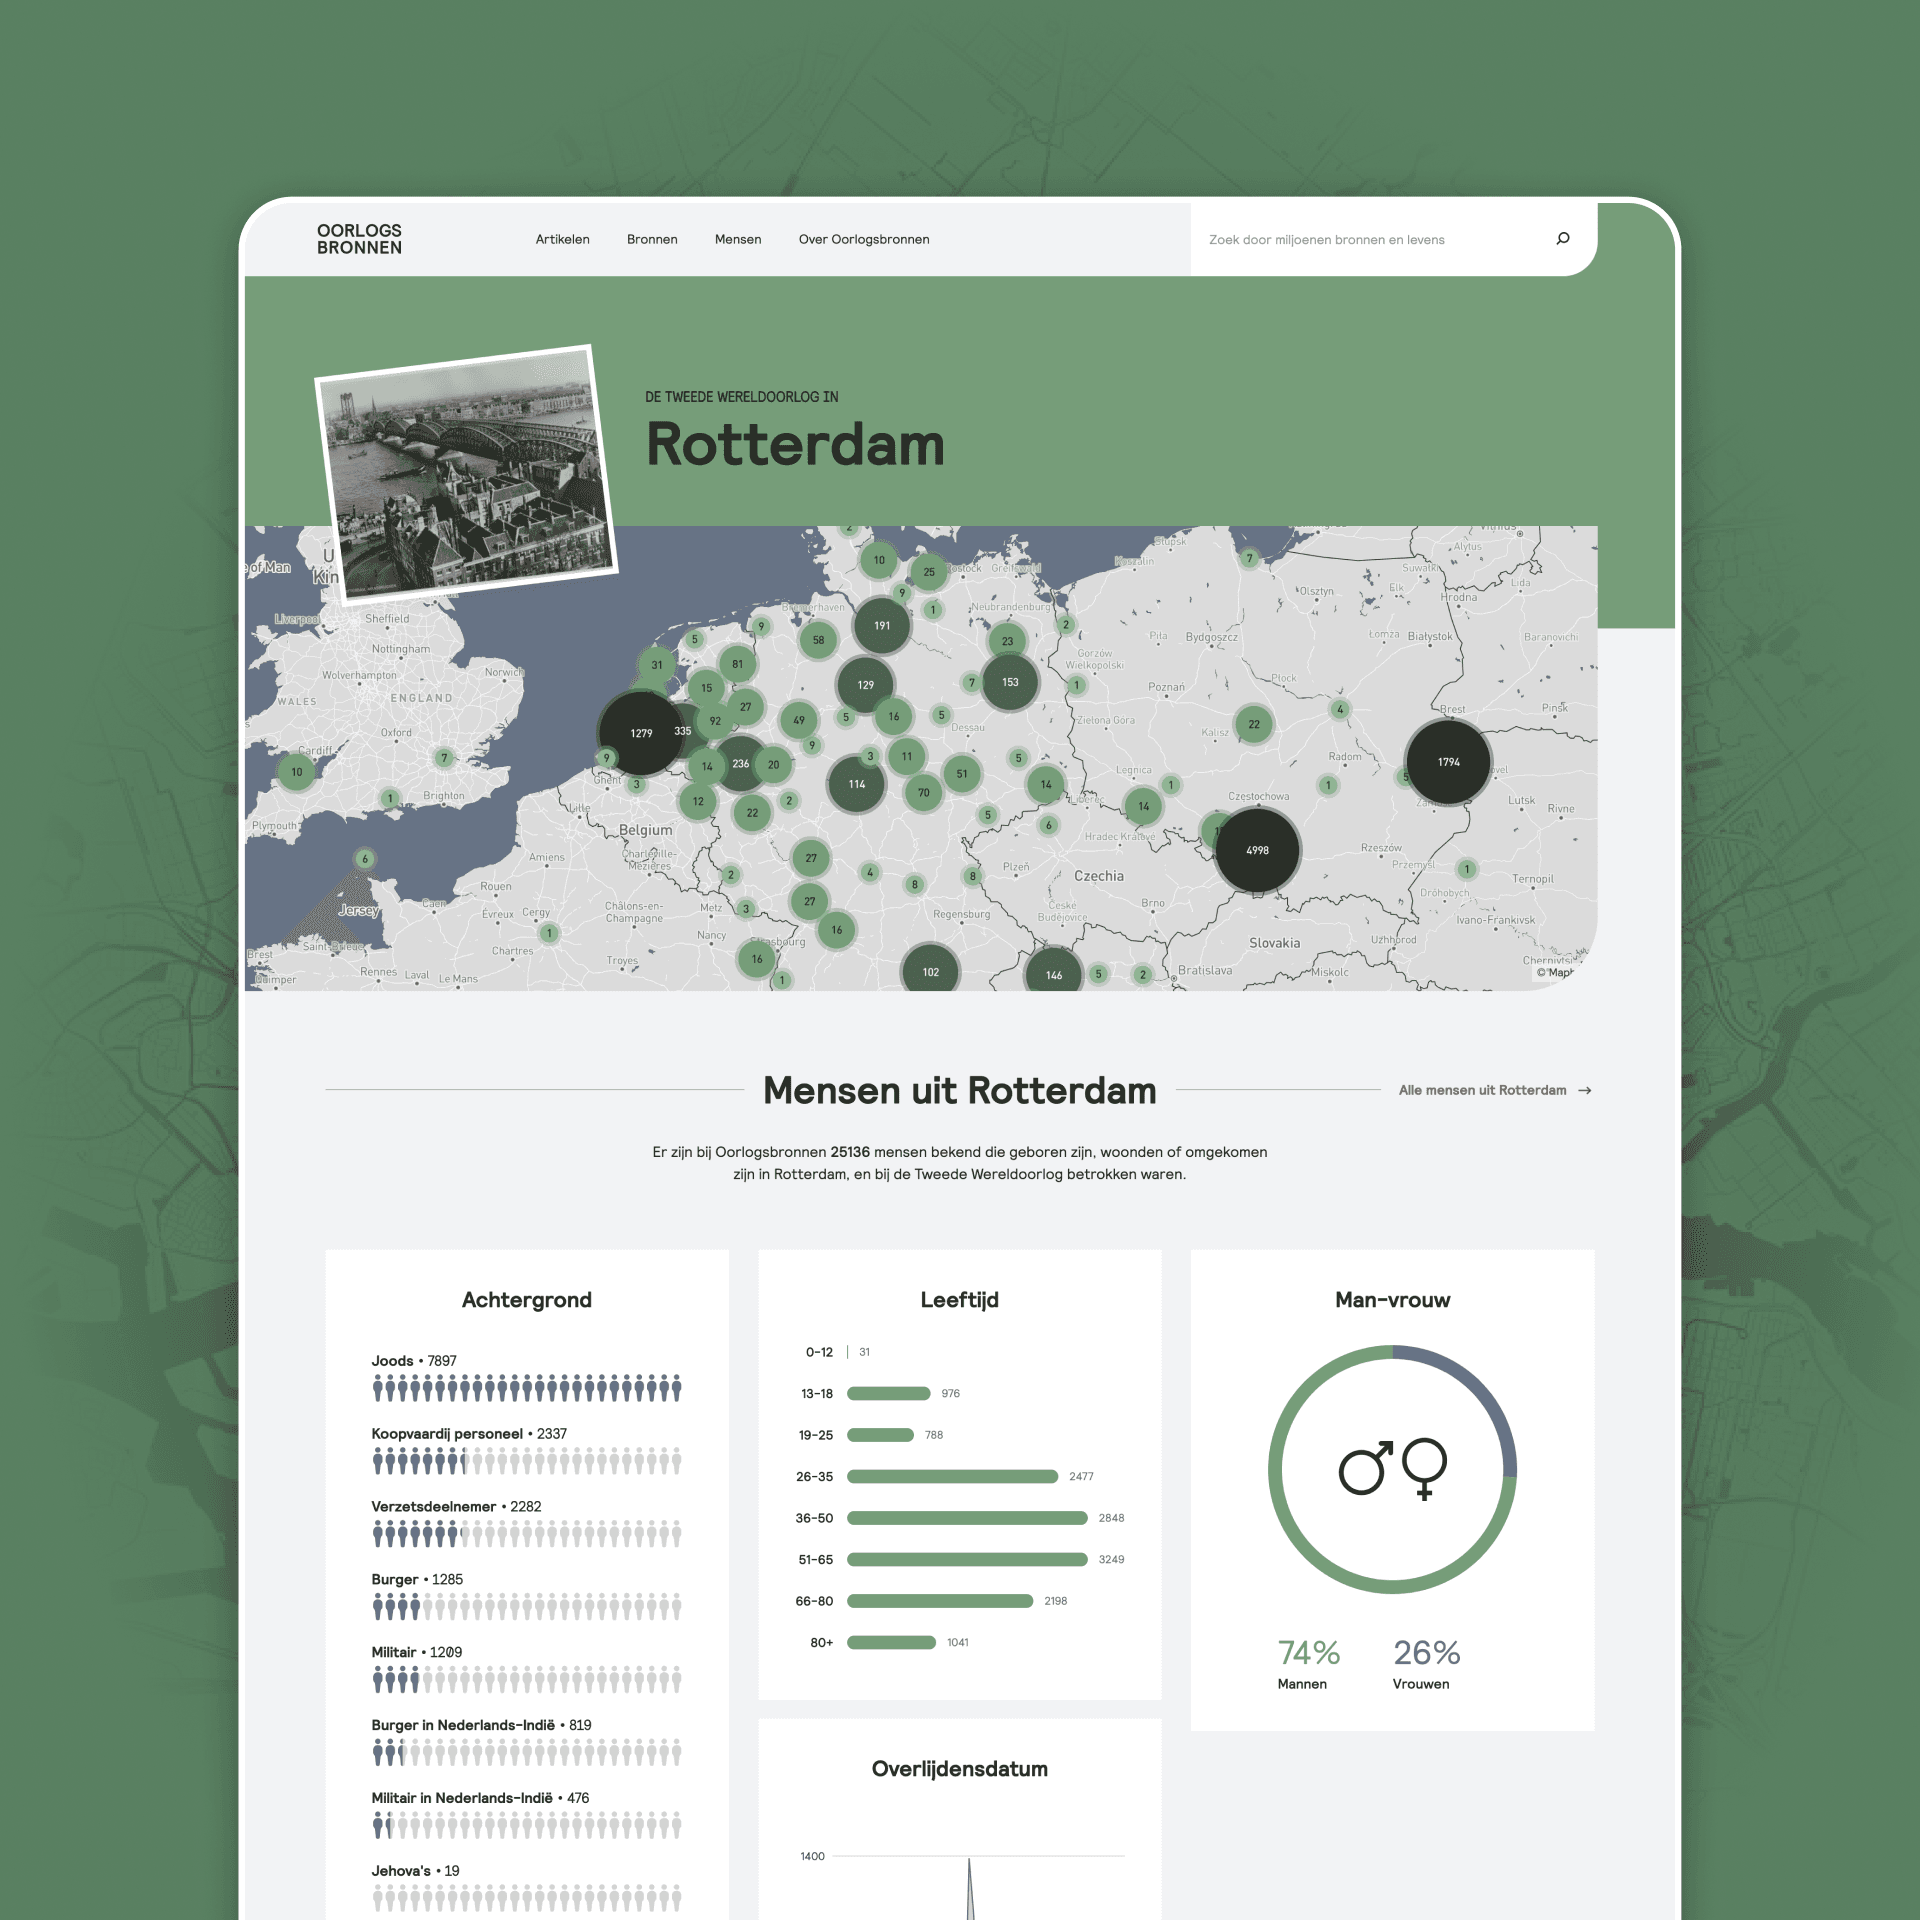 Webpagina over Rotterdam in de Tweede Wereldoorlog